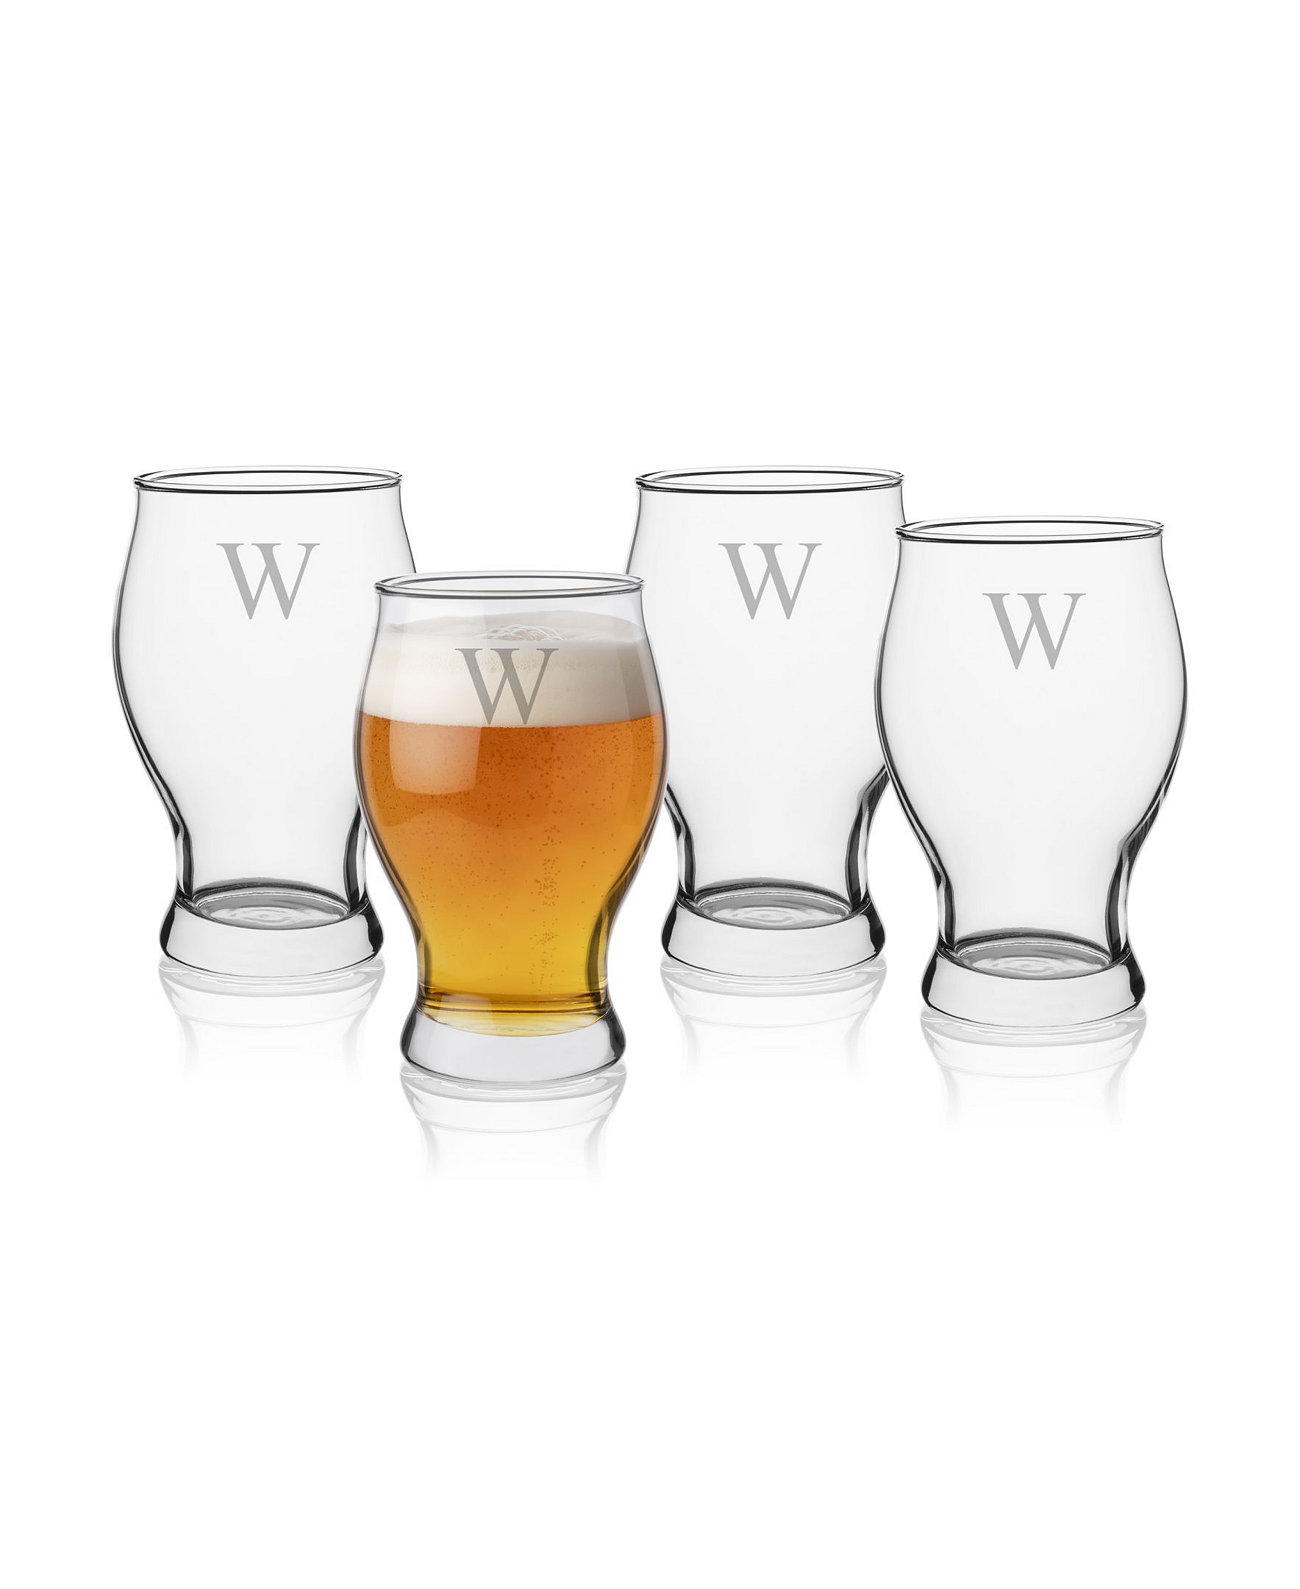 Персонализированный набор бокалов и графина для пива Barlow из 5 предметов Cathy's Concepts